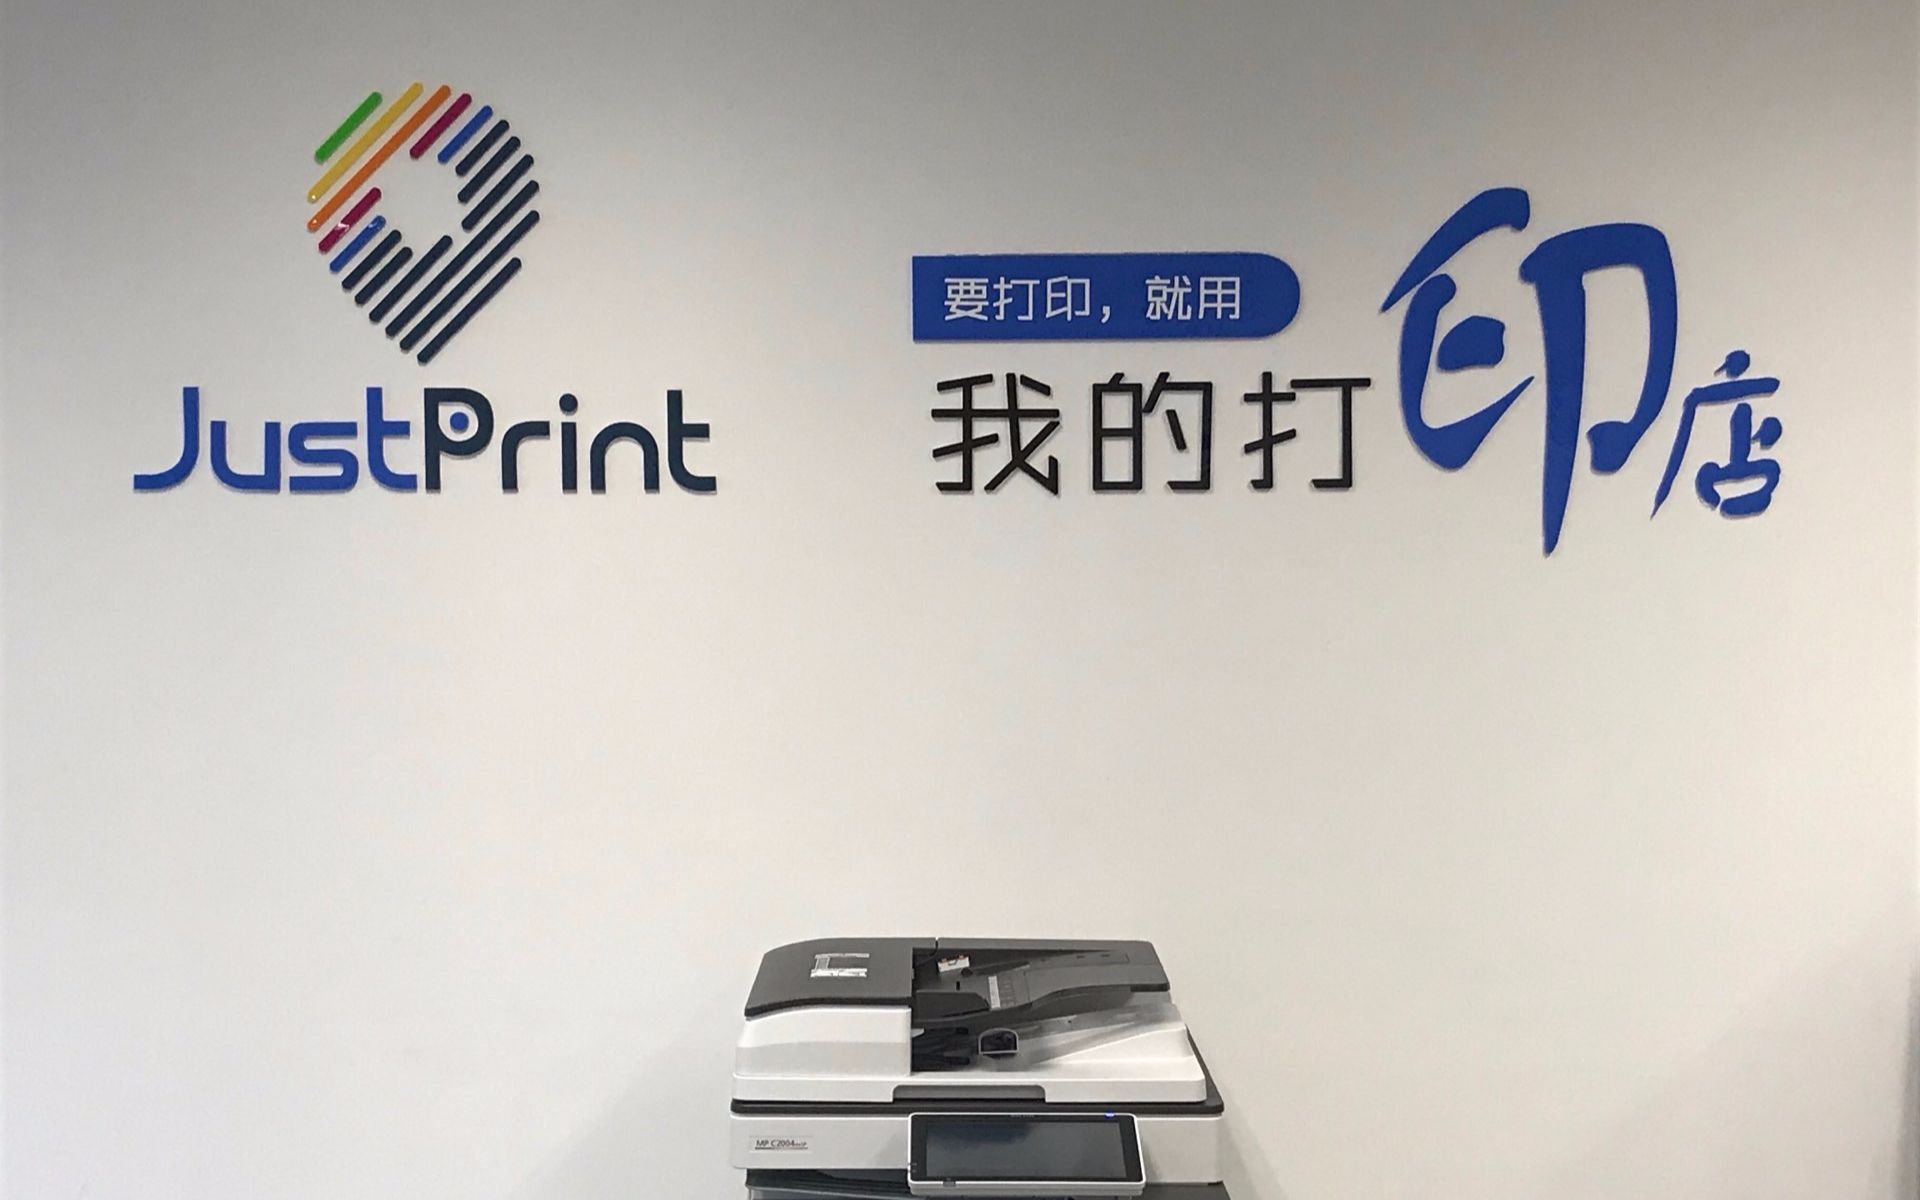 点赞 杭州适印科技出品的justprint宣传视频,您身边的打印店!